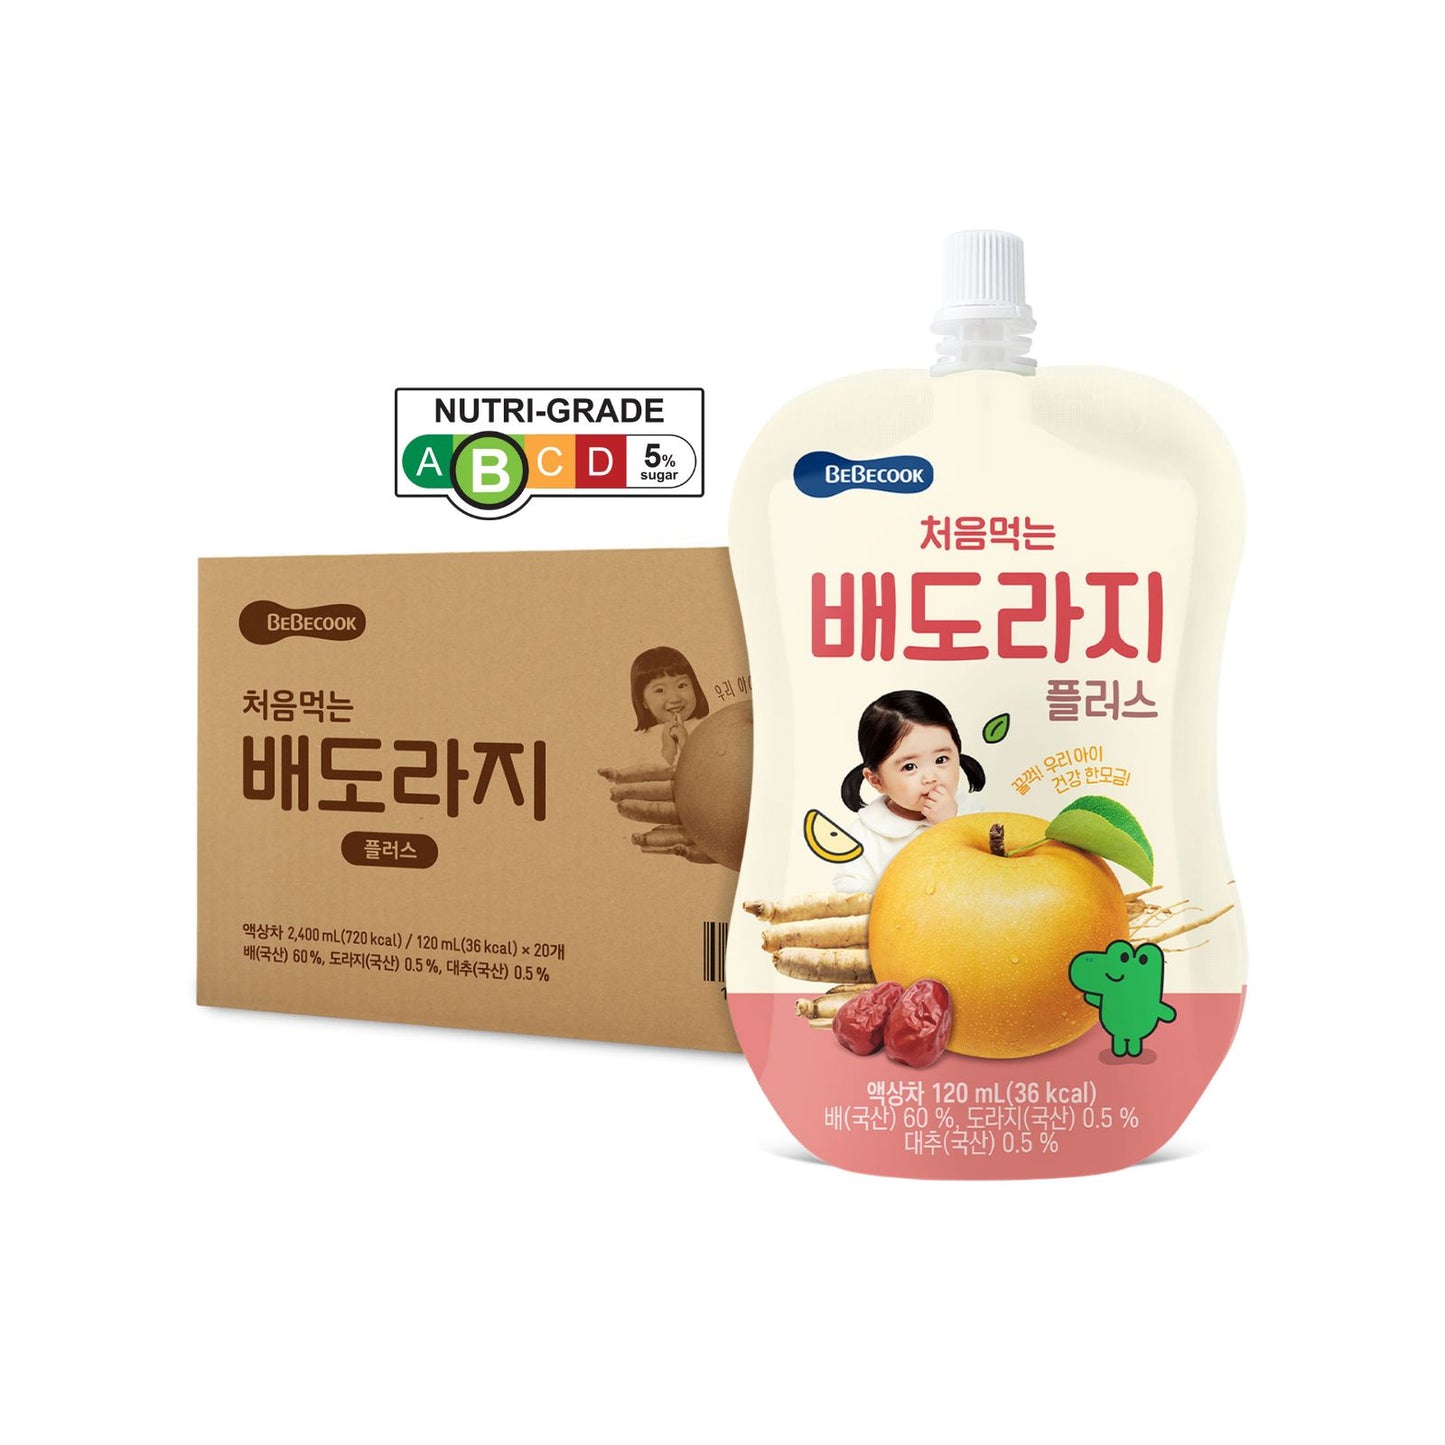 BeBecook - 20-Pk Brewed Korean Golden Pear Drink w Bellflower Root & Jujube 120ml